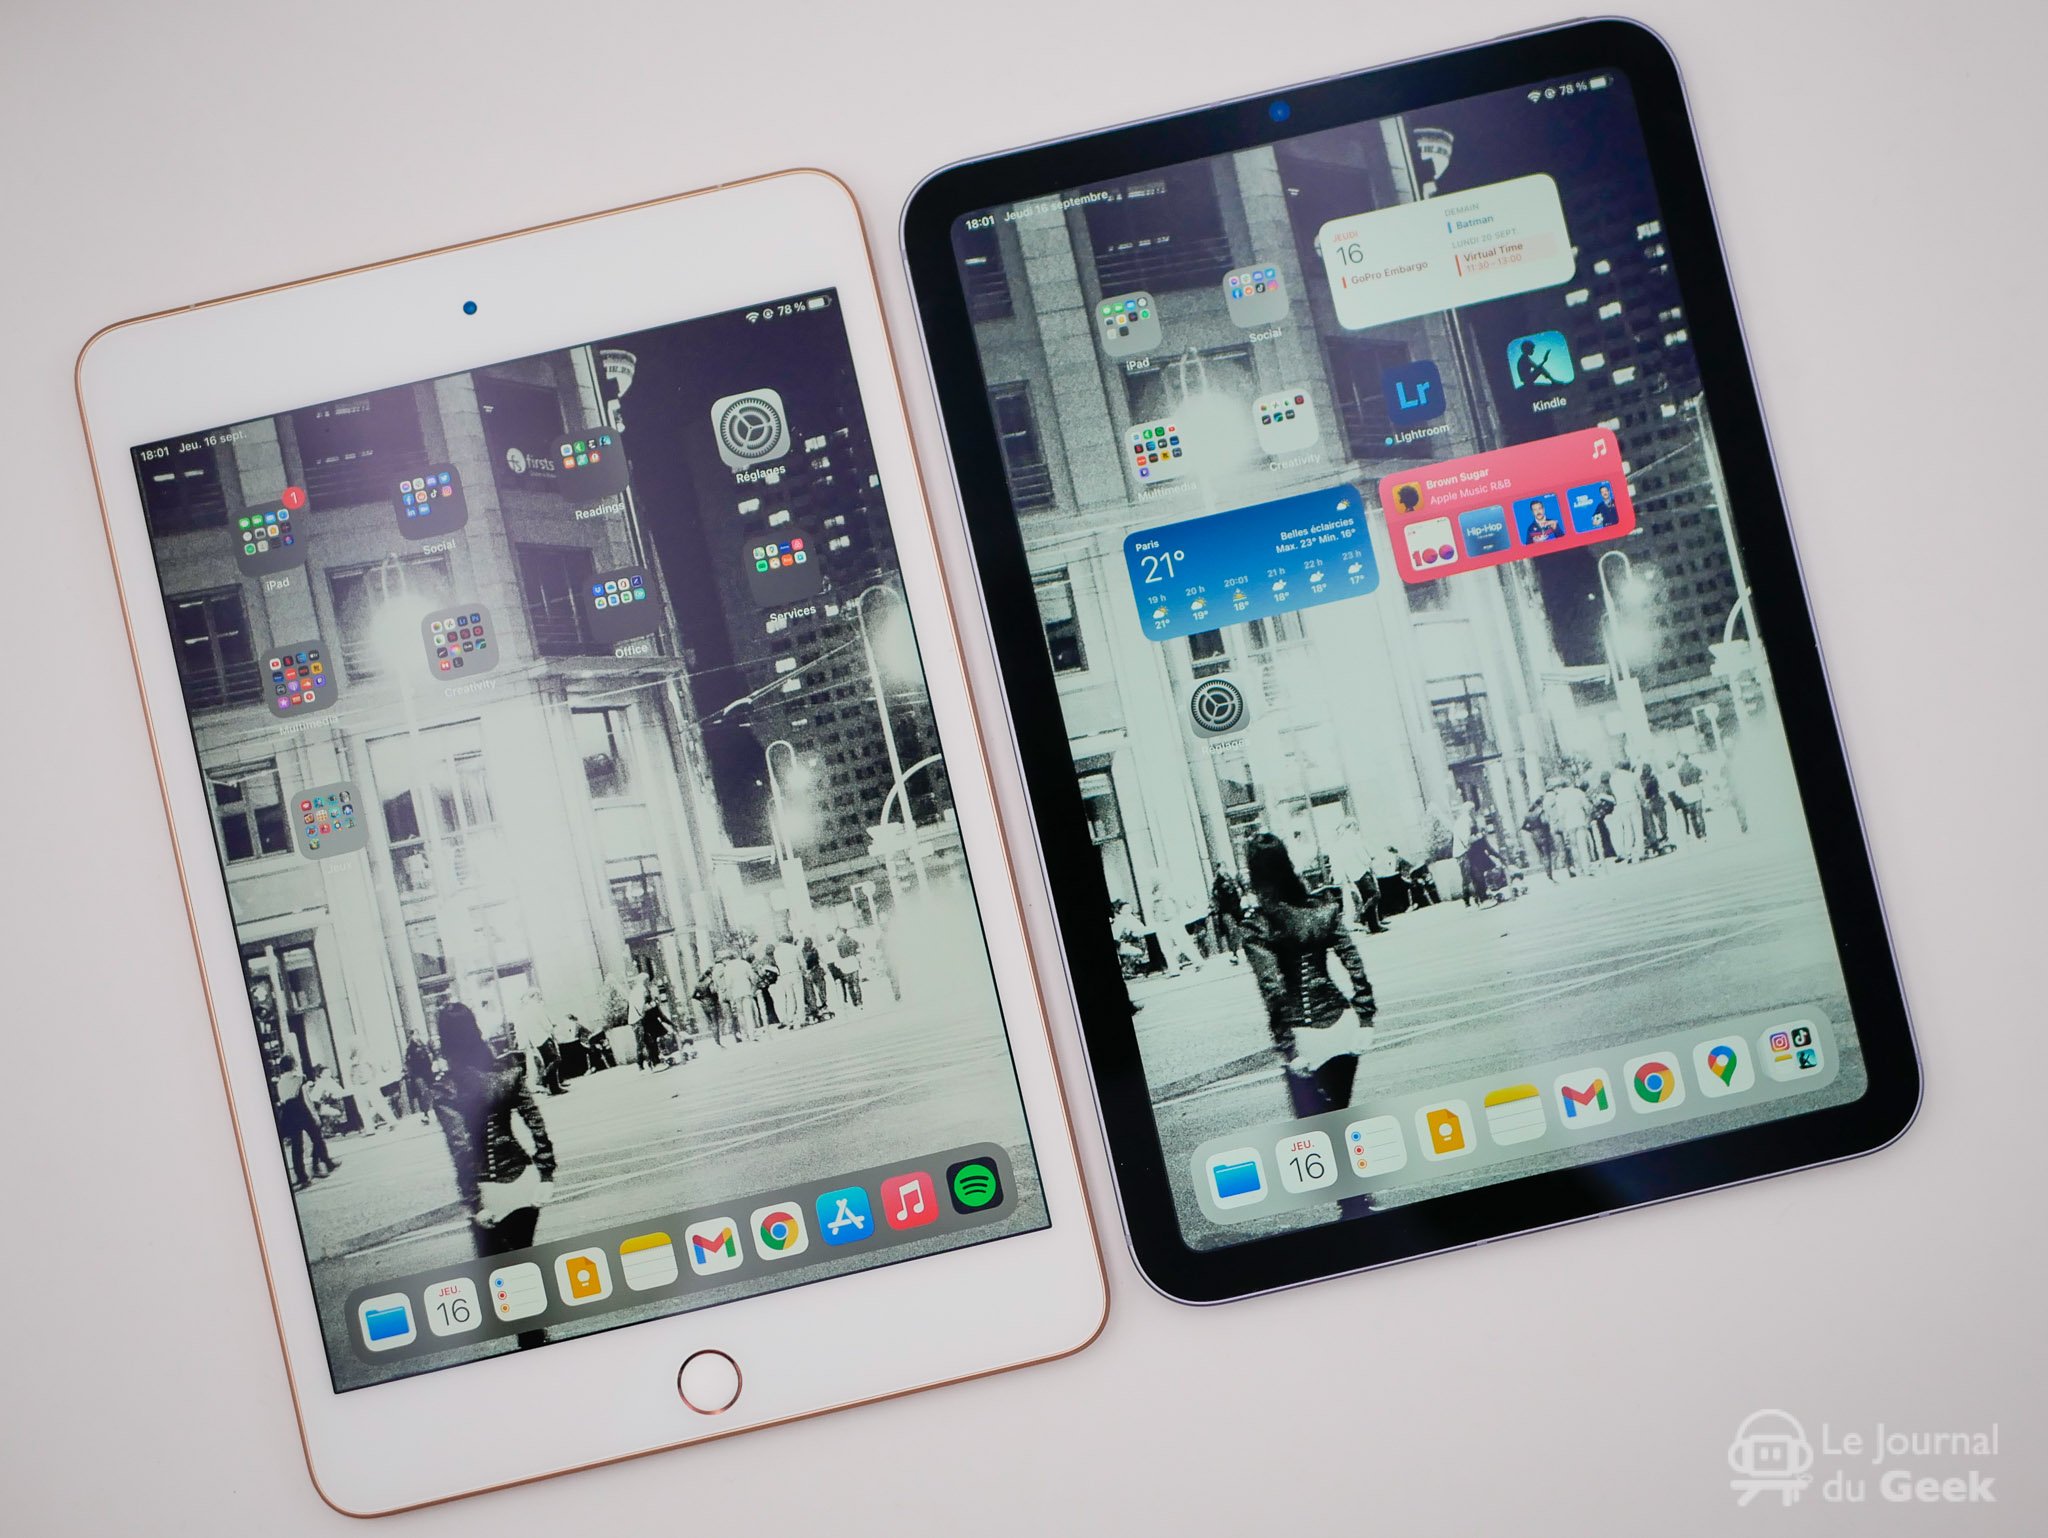 Voici les meilleurs stylets pour iPad, iPad Pro et iPad mini - Tech Advisor